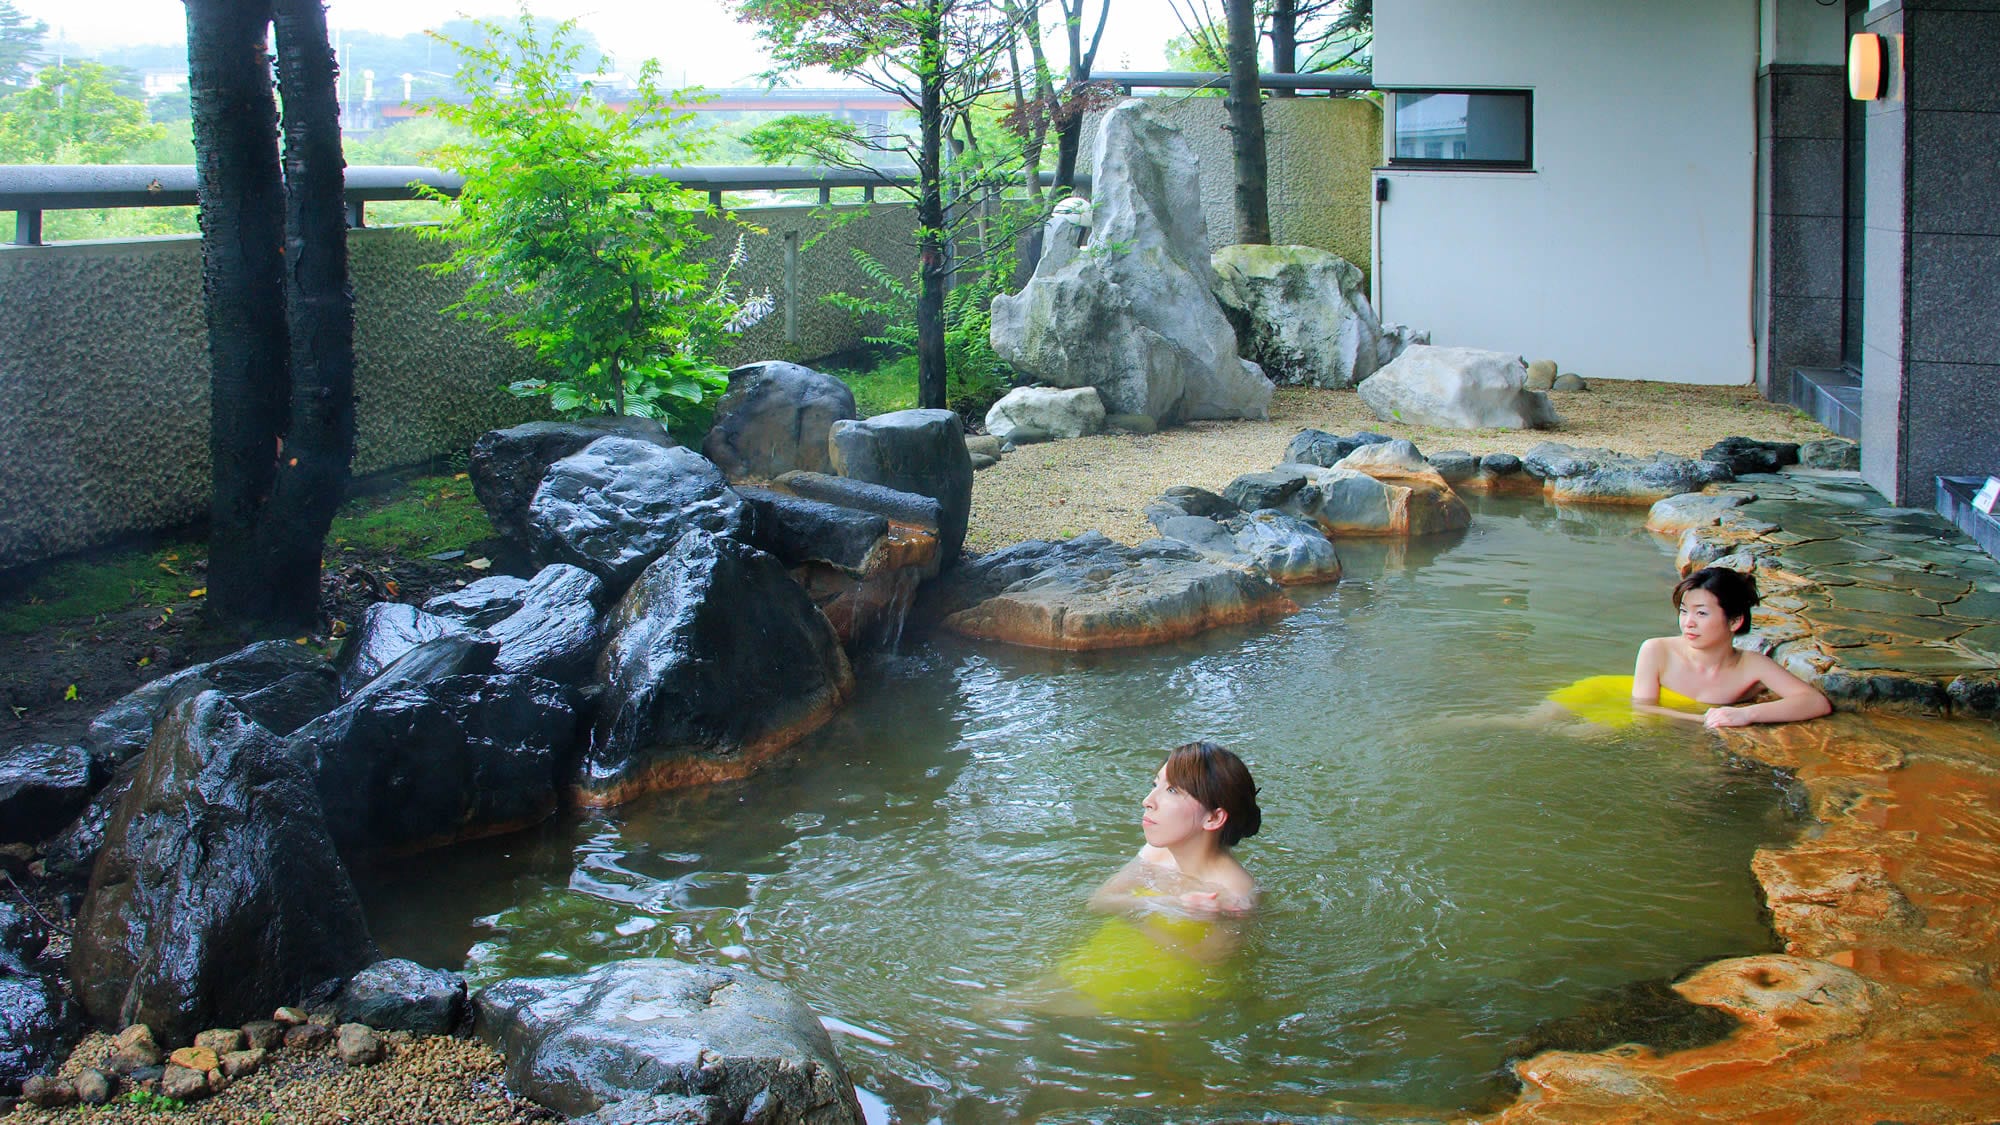 Ladies' open-air bath